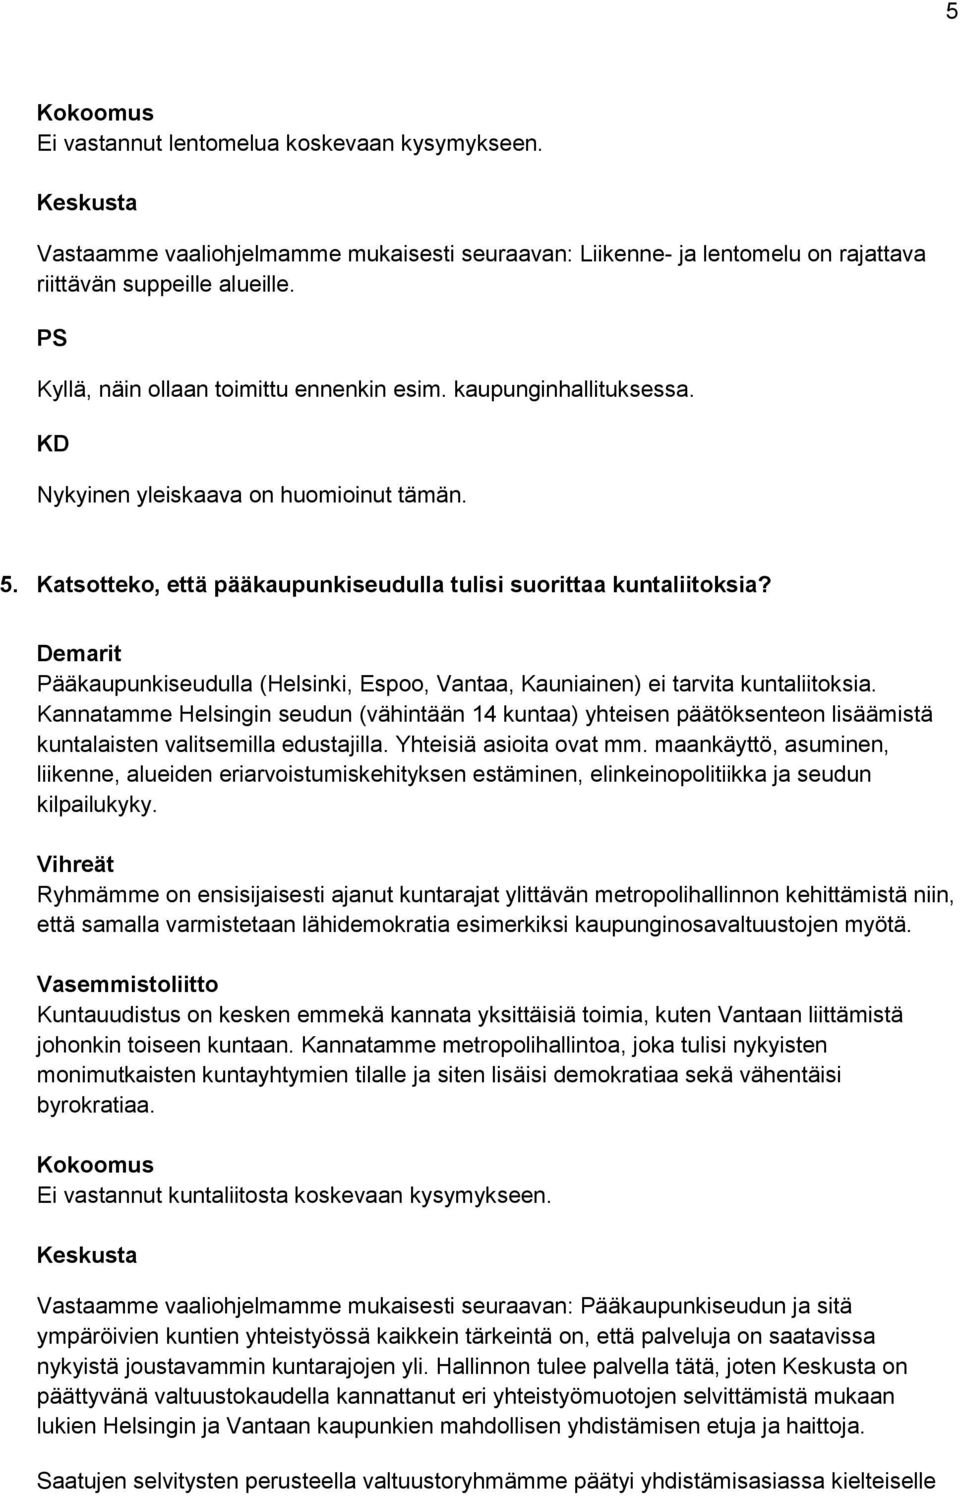 Pääkaupunkiseudulla (Helsinki, Espoo, Vantaa, Kauniainen) ei tarvita kuntaliitoksia.